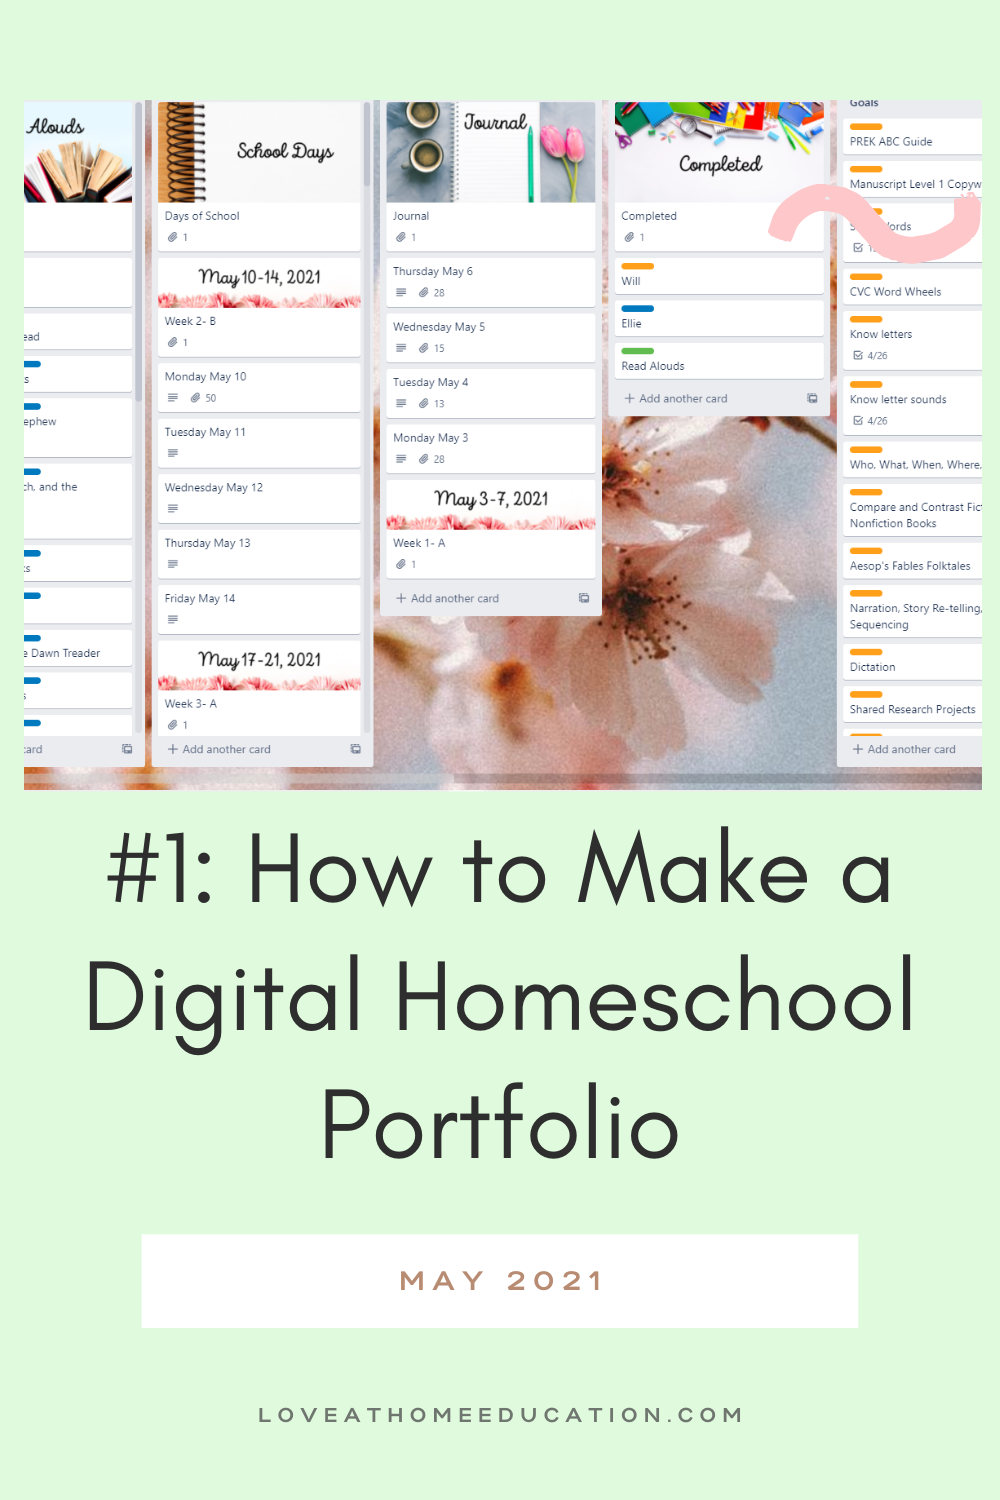 Homeschool Portfolio Series #1: Digital Portfolios